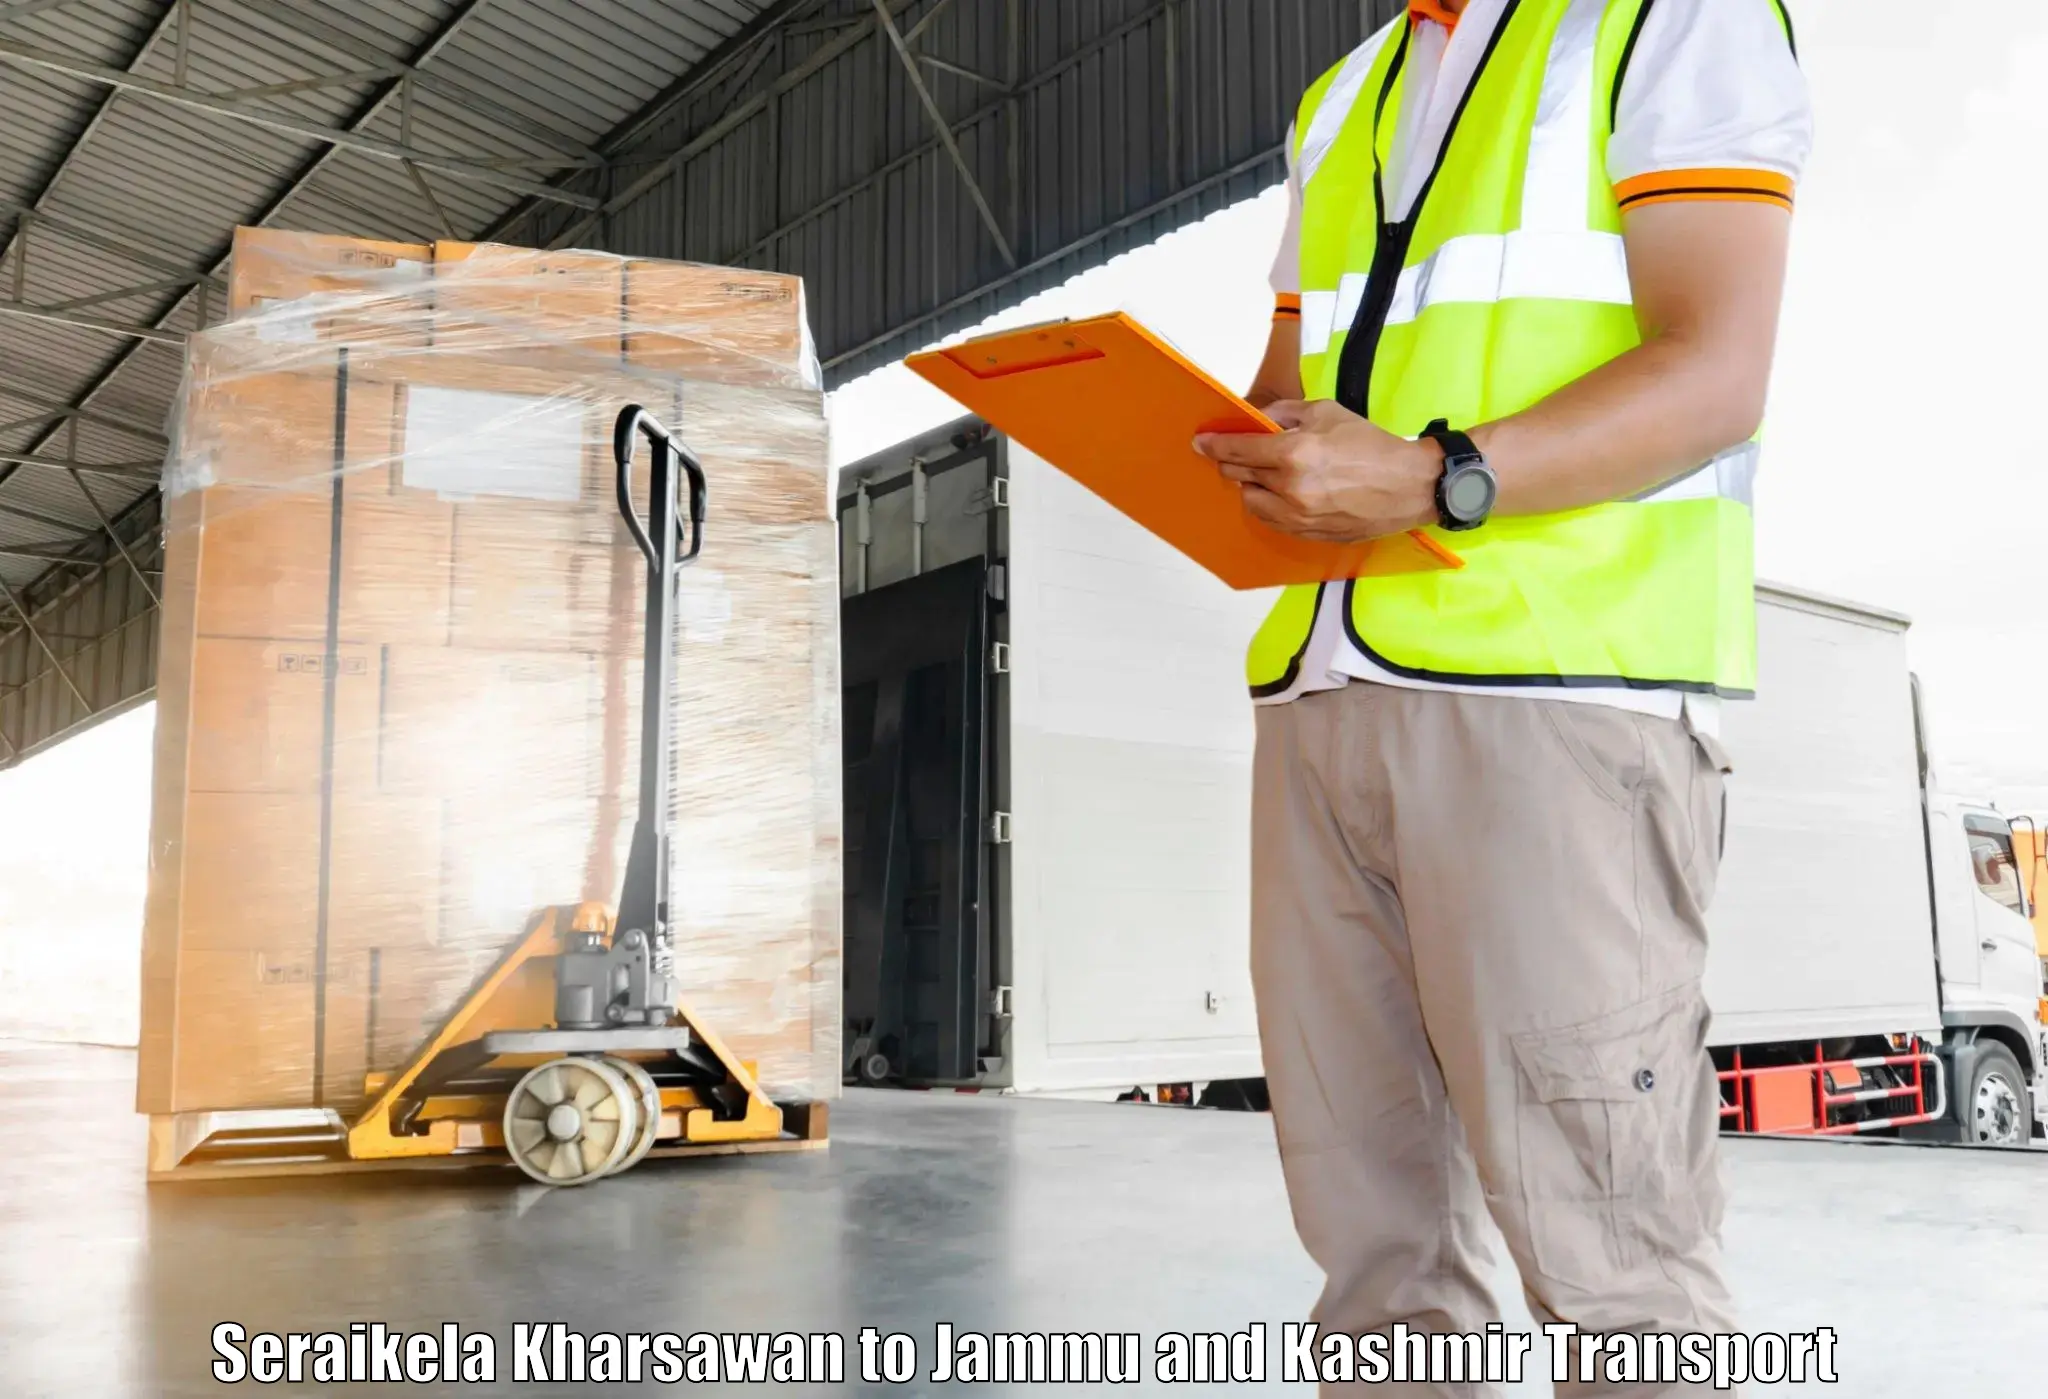 Container transport service Seraikela Kharsawan to Bandipur